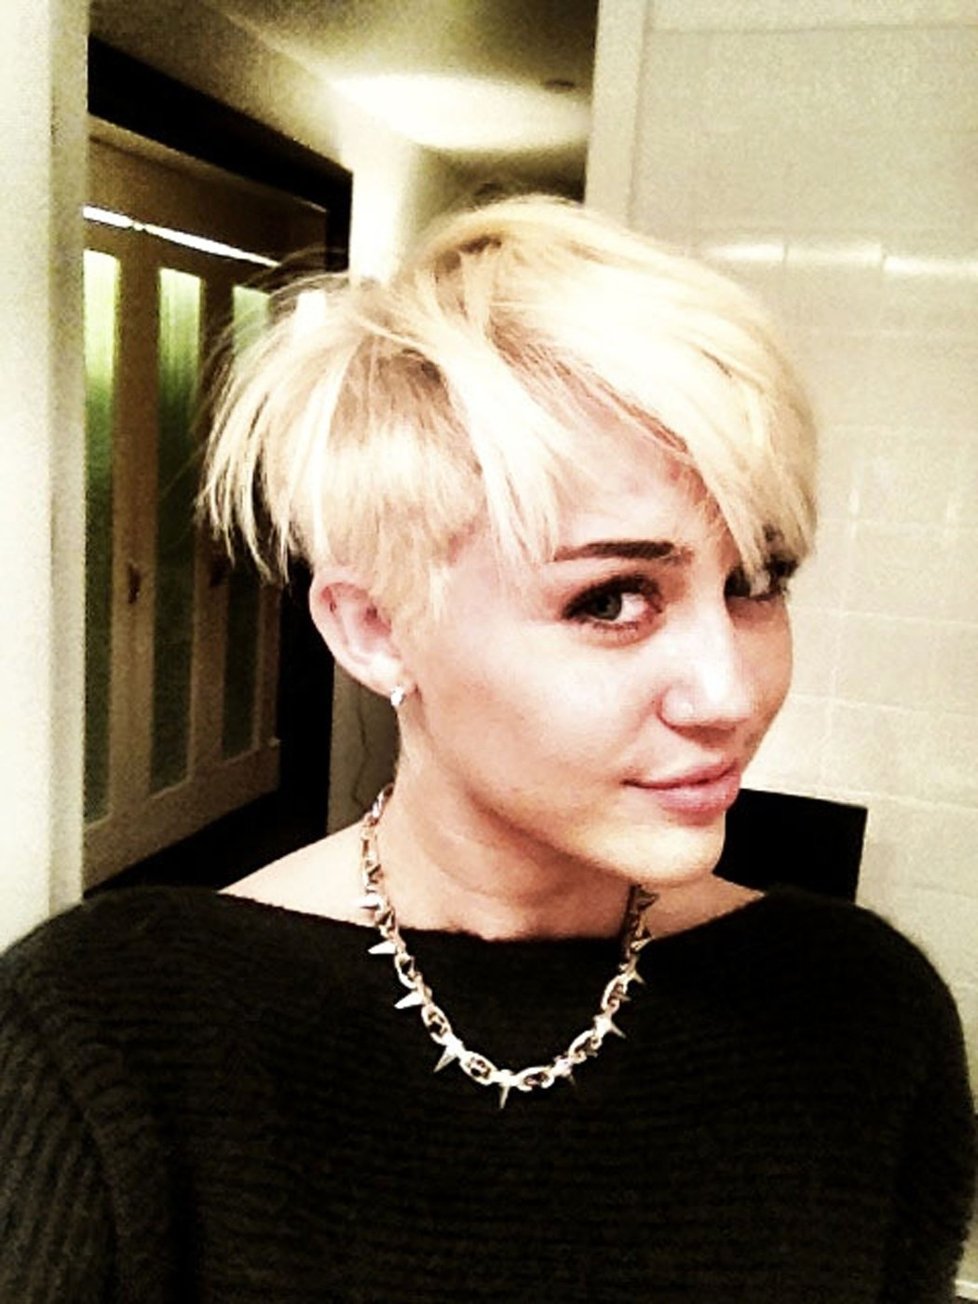 Byla Miley hezčí s delšími nebo kratšími vlasy?